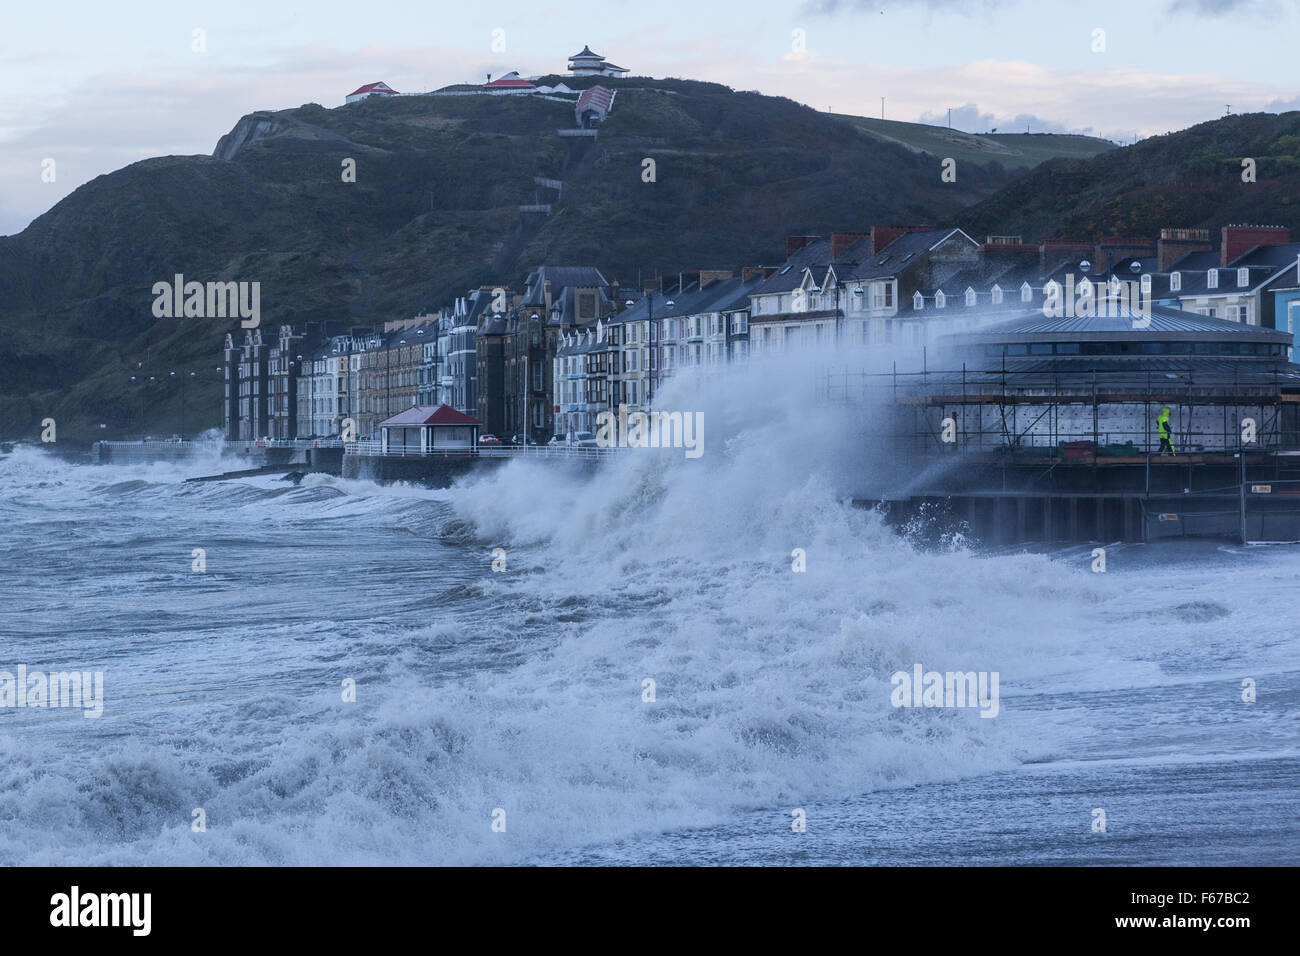 Pays de Galles Aberystwyth UK 13 novembre 2015 Storm Abigail lashes out at Aberystwyth ce matin avec furious vagues tandis que deux constructeurs d'essayer de travailler sur l'échafaudage du nouveau kiosque sur la promenade. Crédit : Ian Jones/Alamy Live News Banque D'Images